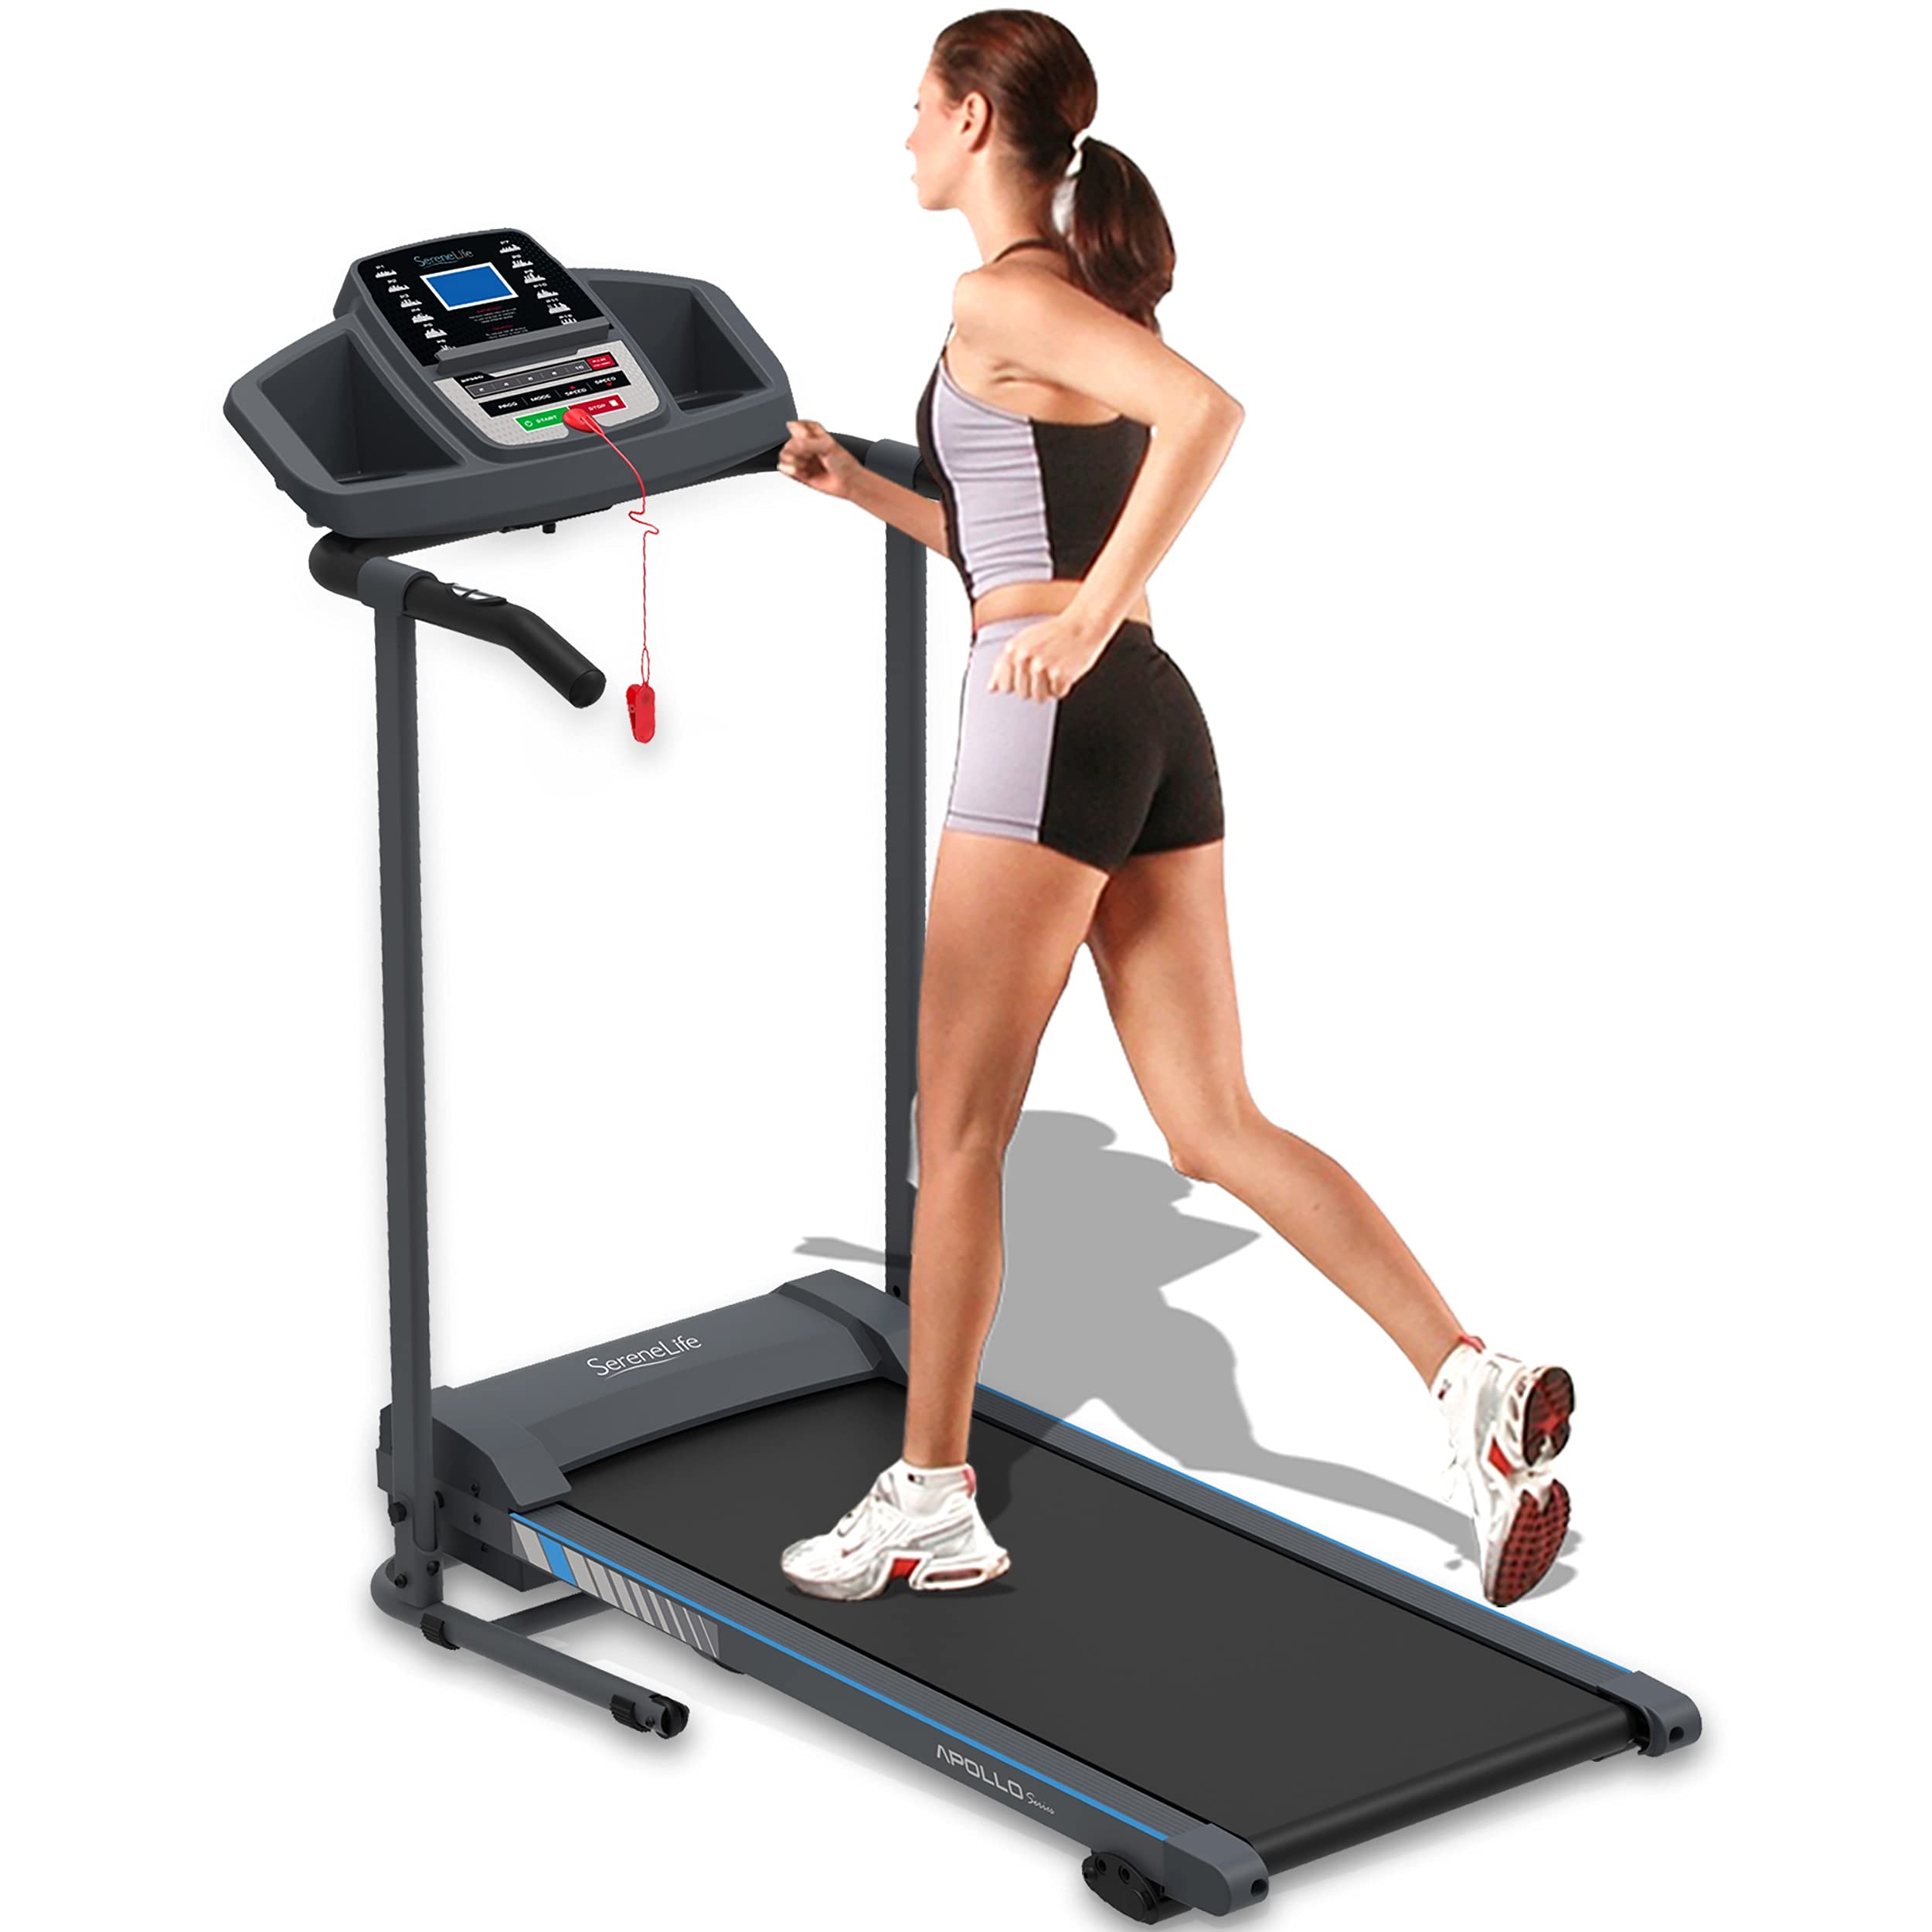 SereneLife 折叠跑步机 - 带液晶屏的可折叠家用健身器材，用于步行和跑步 - 有氧运动机 - 预设和可调节程序 - 蓝牙连接